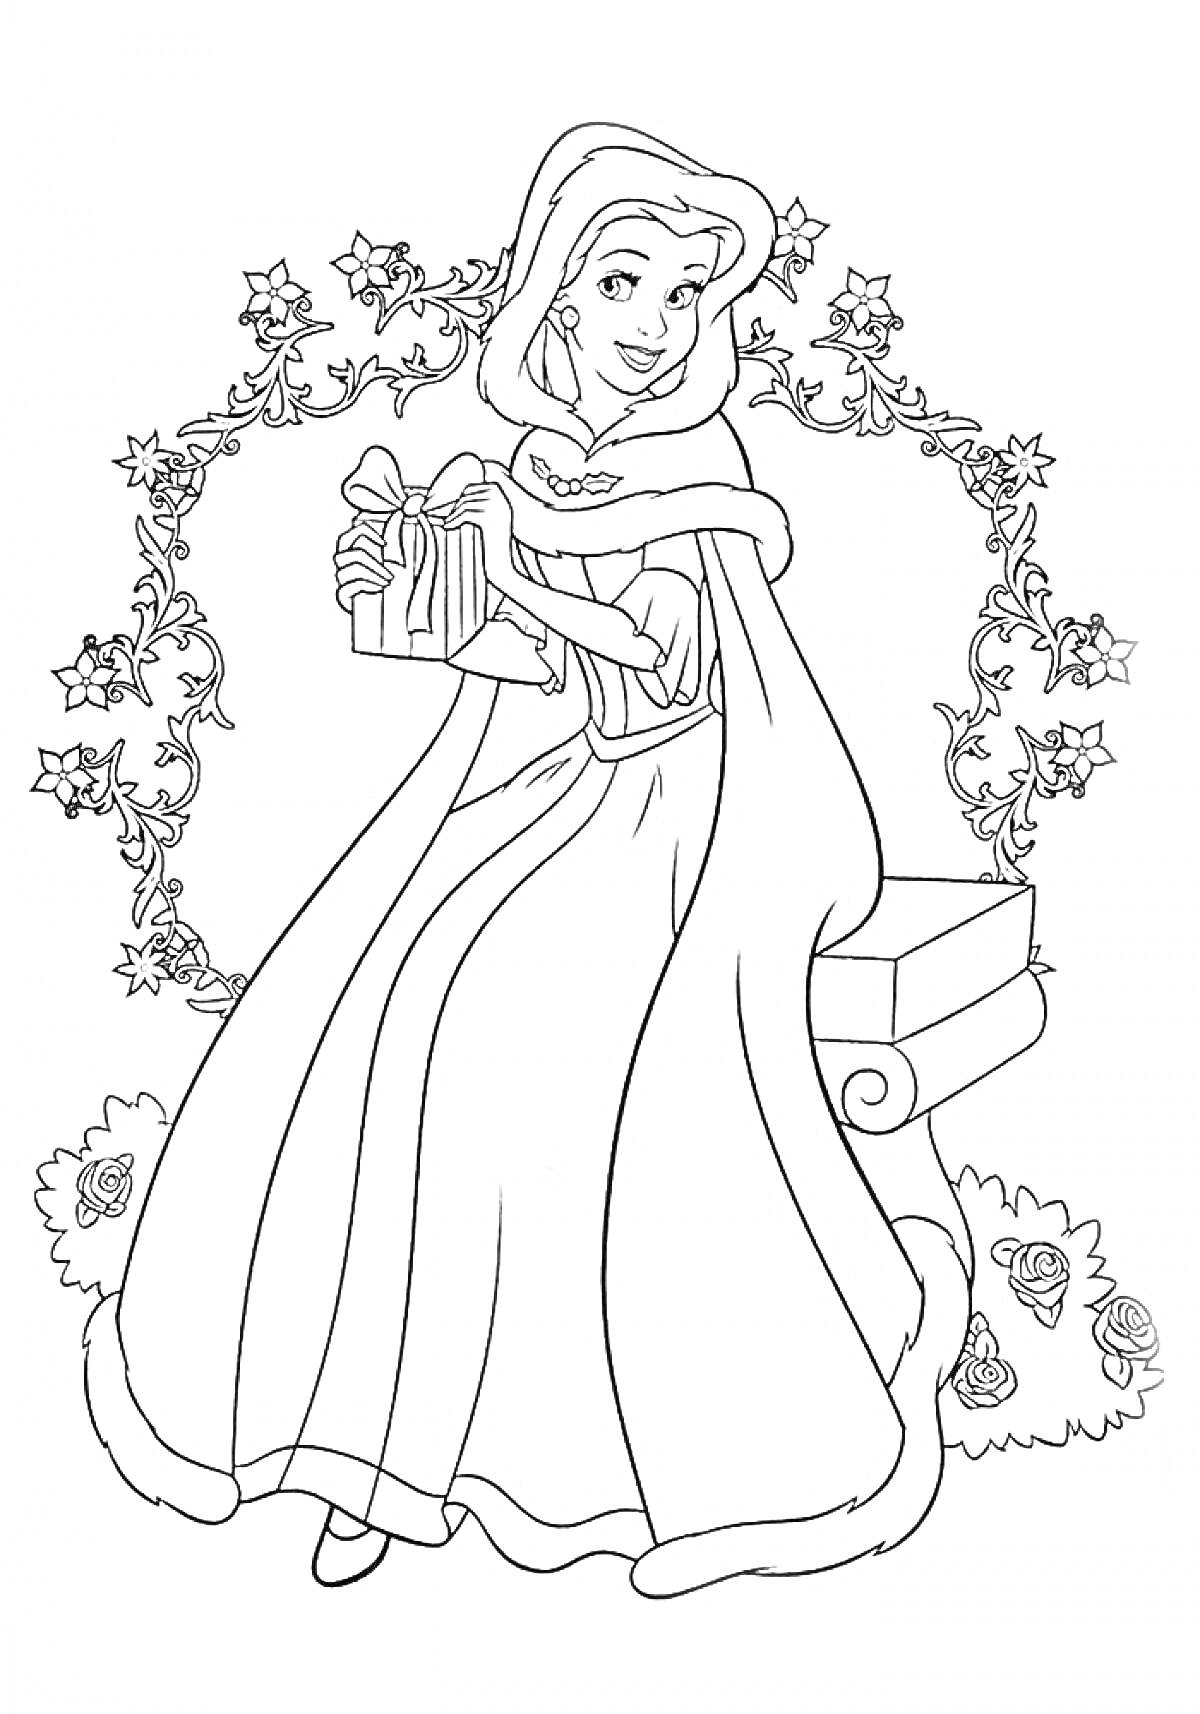 Раскраска Принцесса с подарком на фоне цветочной арки и каменной скамьи